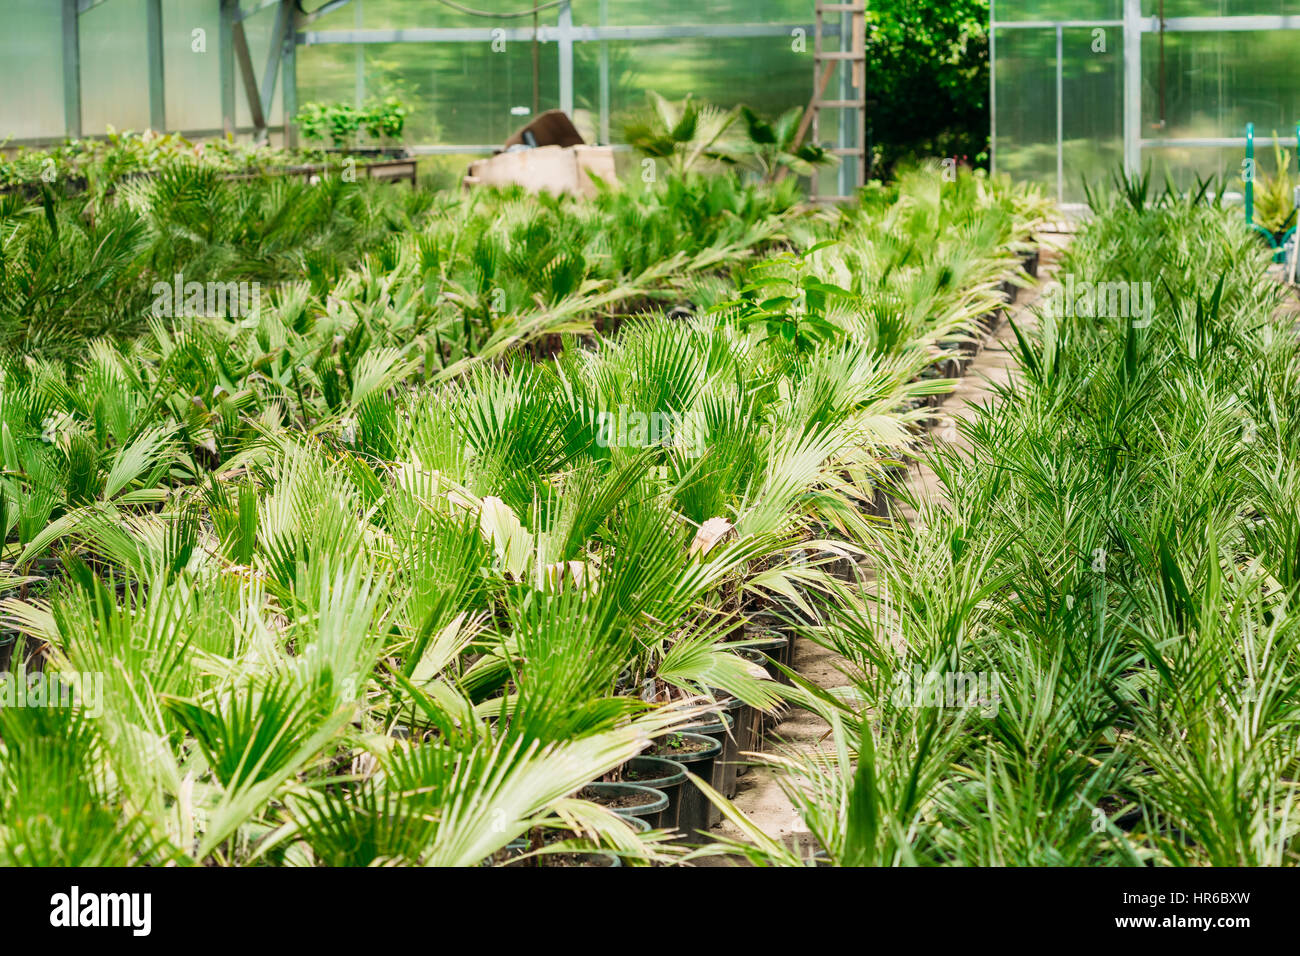 Kleine grüne Sprossen Pflanze Palme mit Blatt, Blätter wachsen aus dem Boden In Töpfen im Gewächshaus oder Gewächshaus. Frühling, Konzept des neuen Lebens. Stockfoto